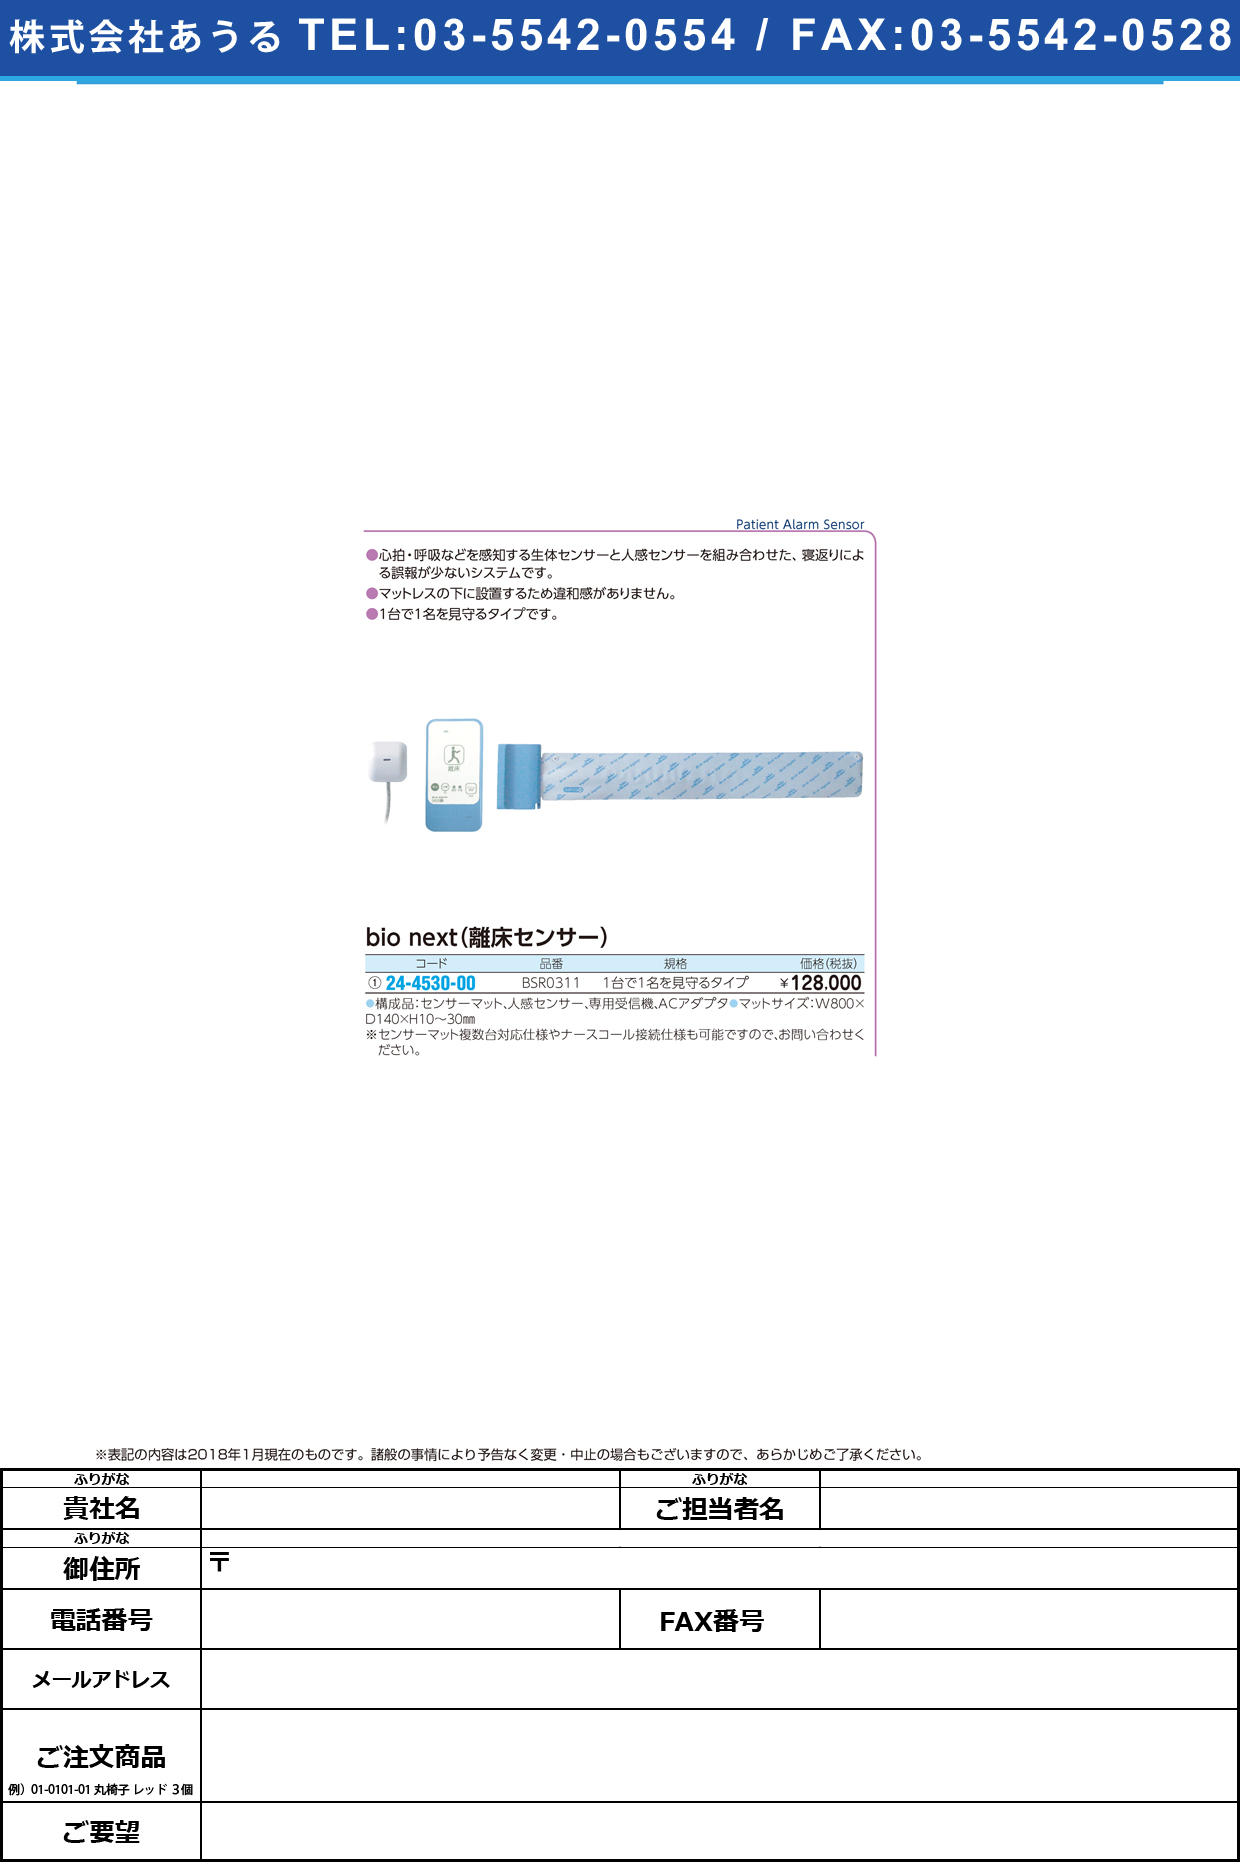 (24-4530-00)ｂｉｏｎｅｘｔ離床センサー BSR0311(1ﾀﾞｲ1ﾅﾐﾏﾓﾘｾｯ BIONEXTﾘｼｮｳｾﾝｻｰ【1組単位】【2018年カタログ商品】